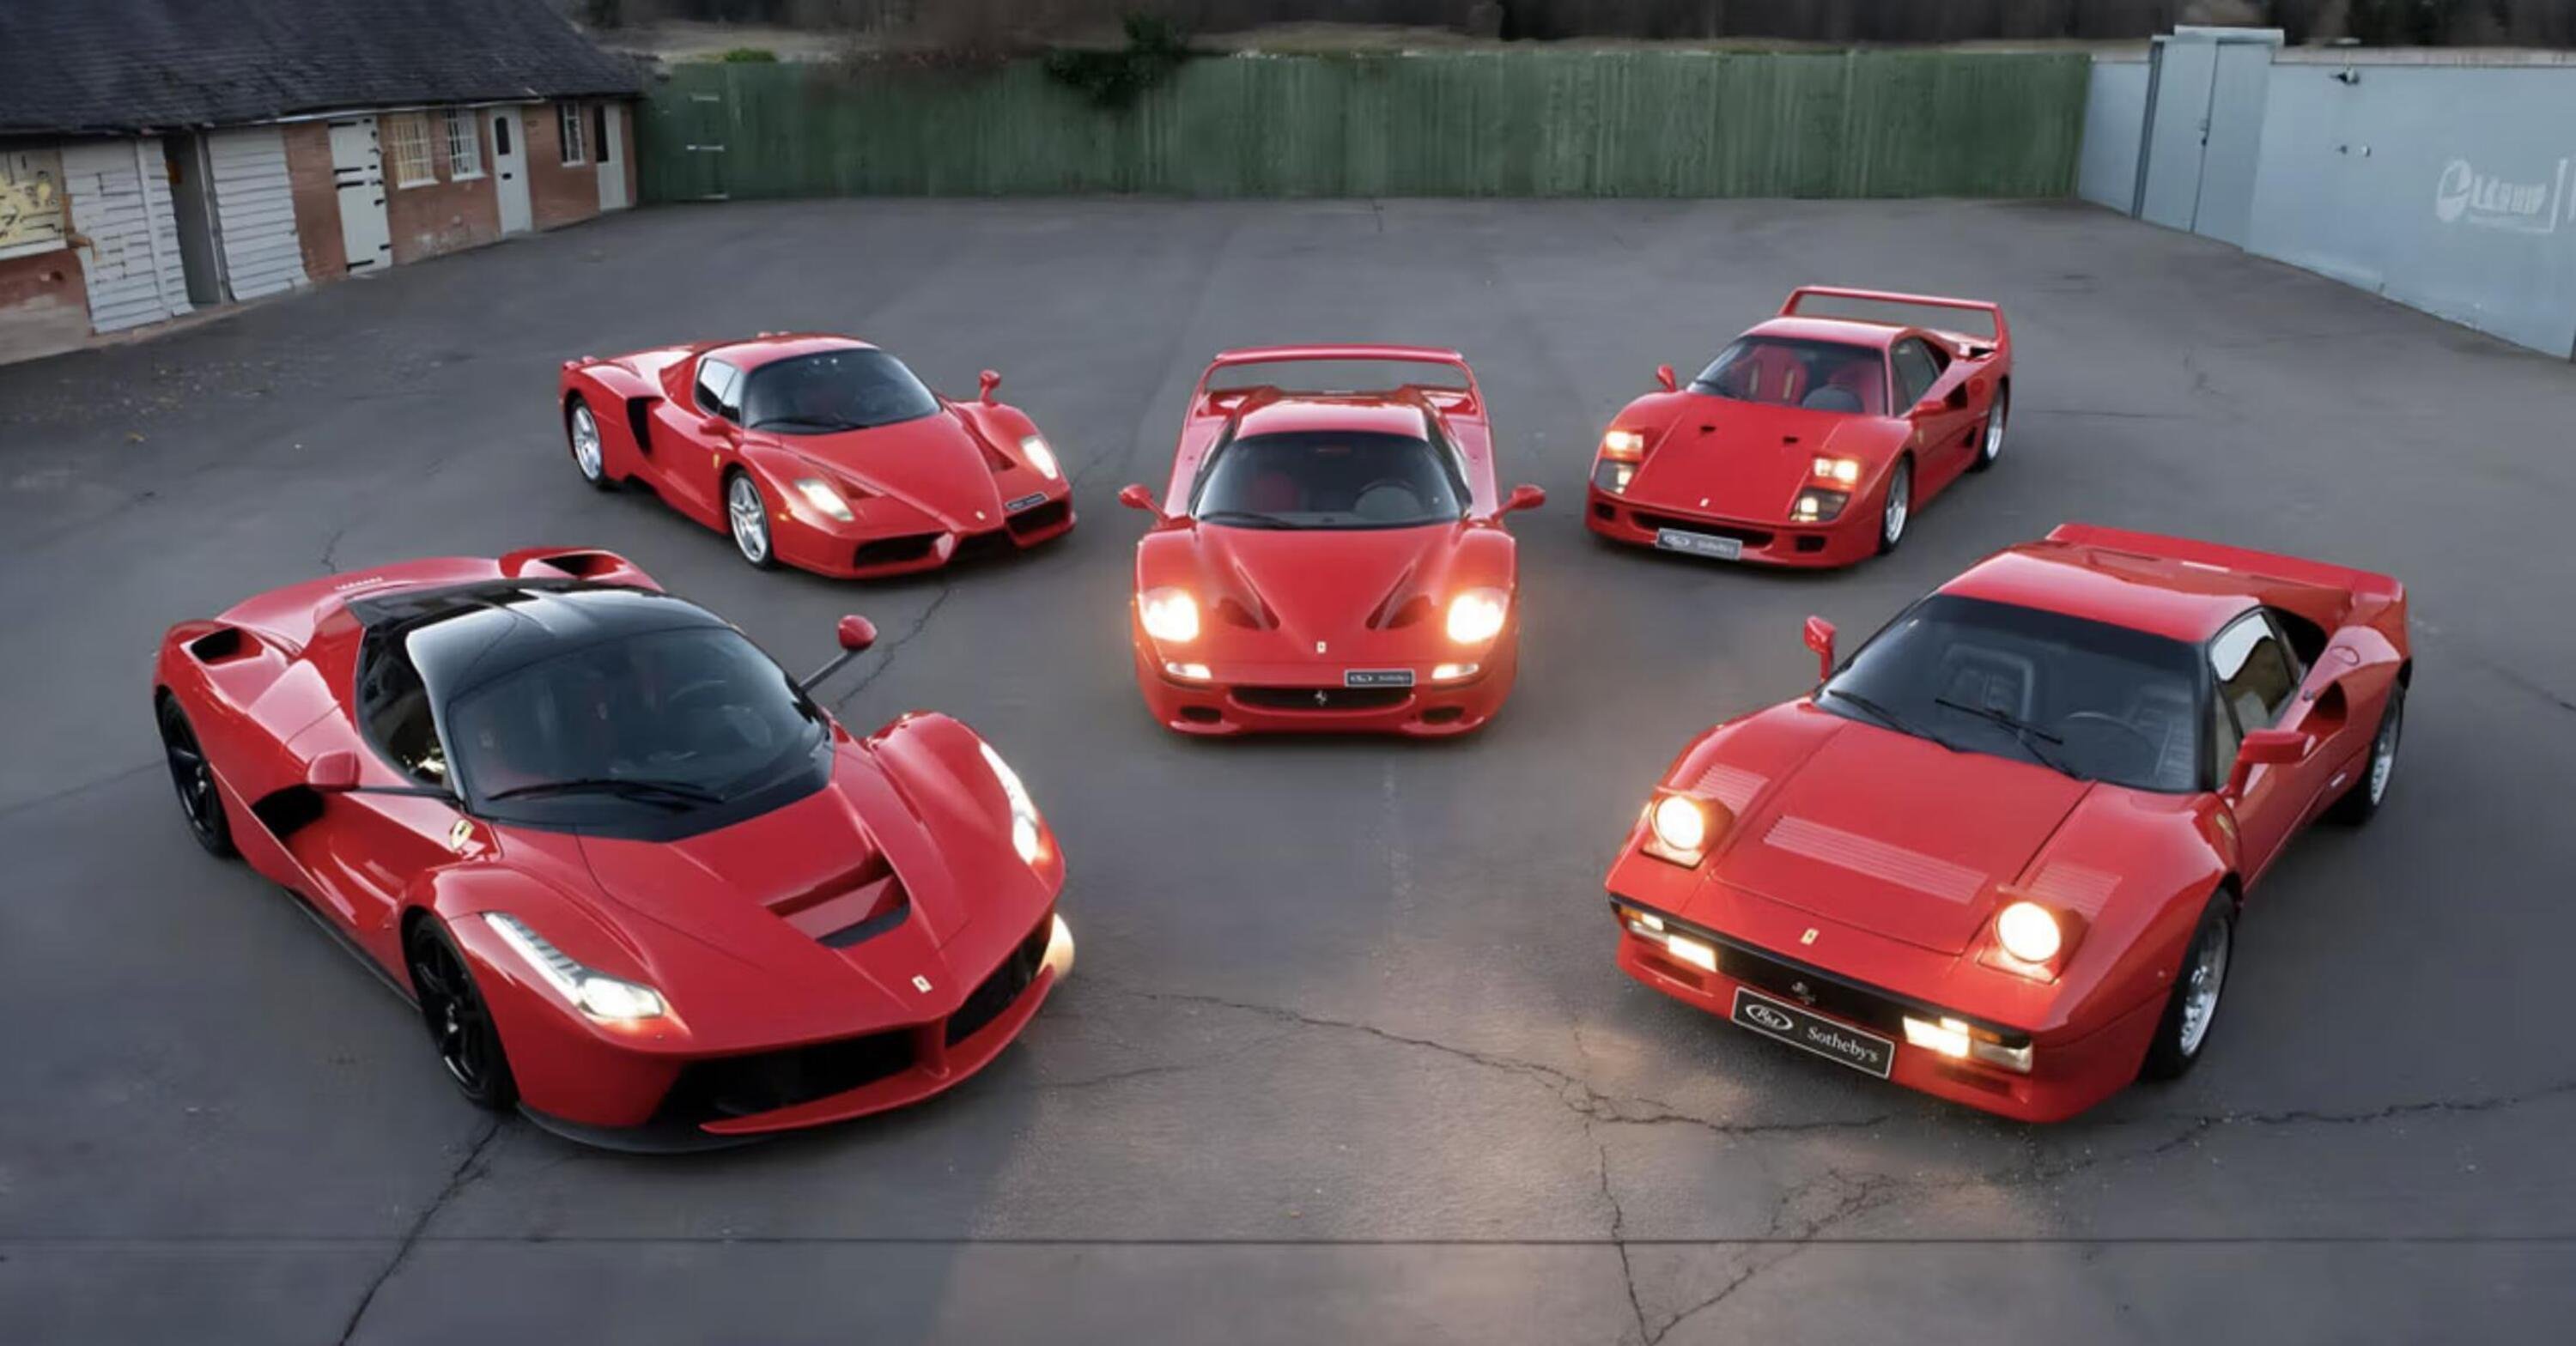 Le &ldquo;Big Five&rdquo; di Ferrari all&rsquo;asta: 288 GTO, F40, F50, Enzo e LaFerrari